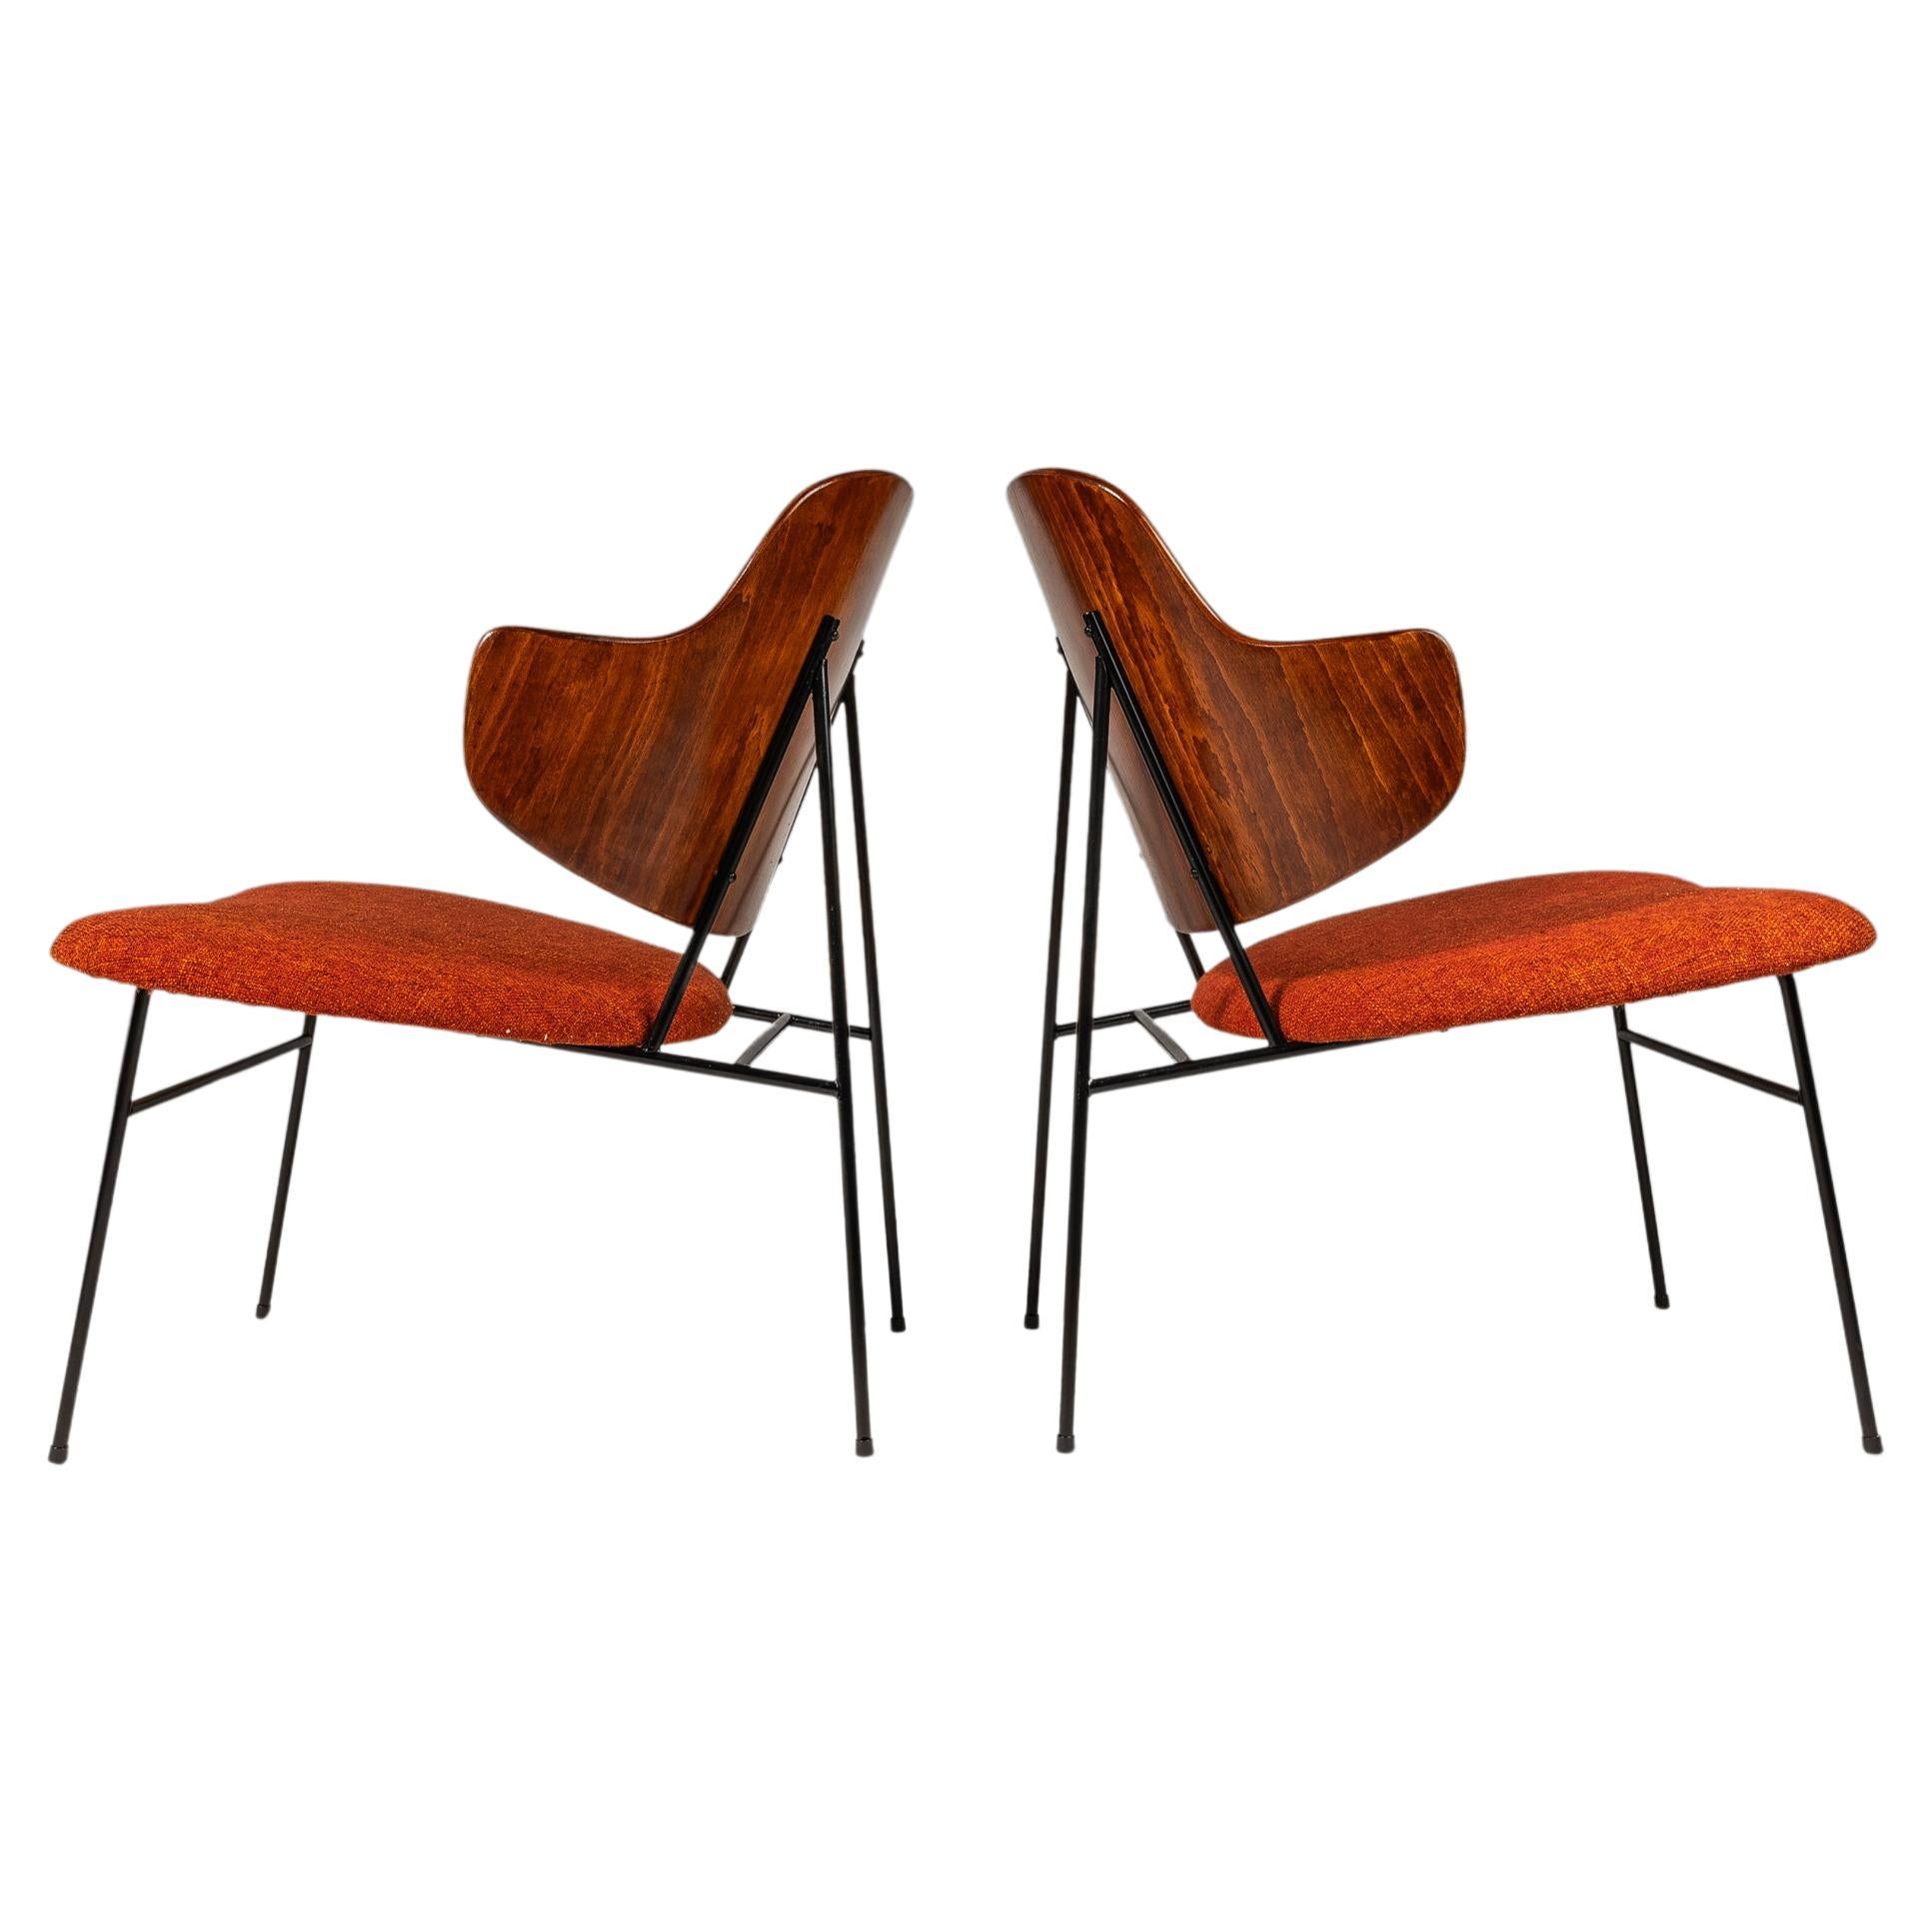 Set of 2 Restored 'Penguin' Chairs by Ib Kofod-Larsen, Selig, Denmark, c. 1960s